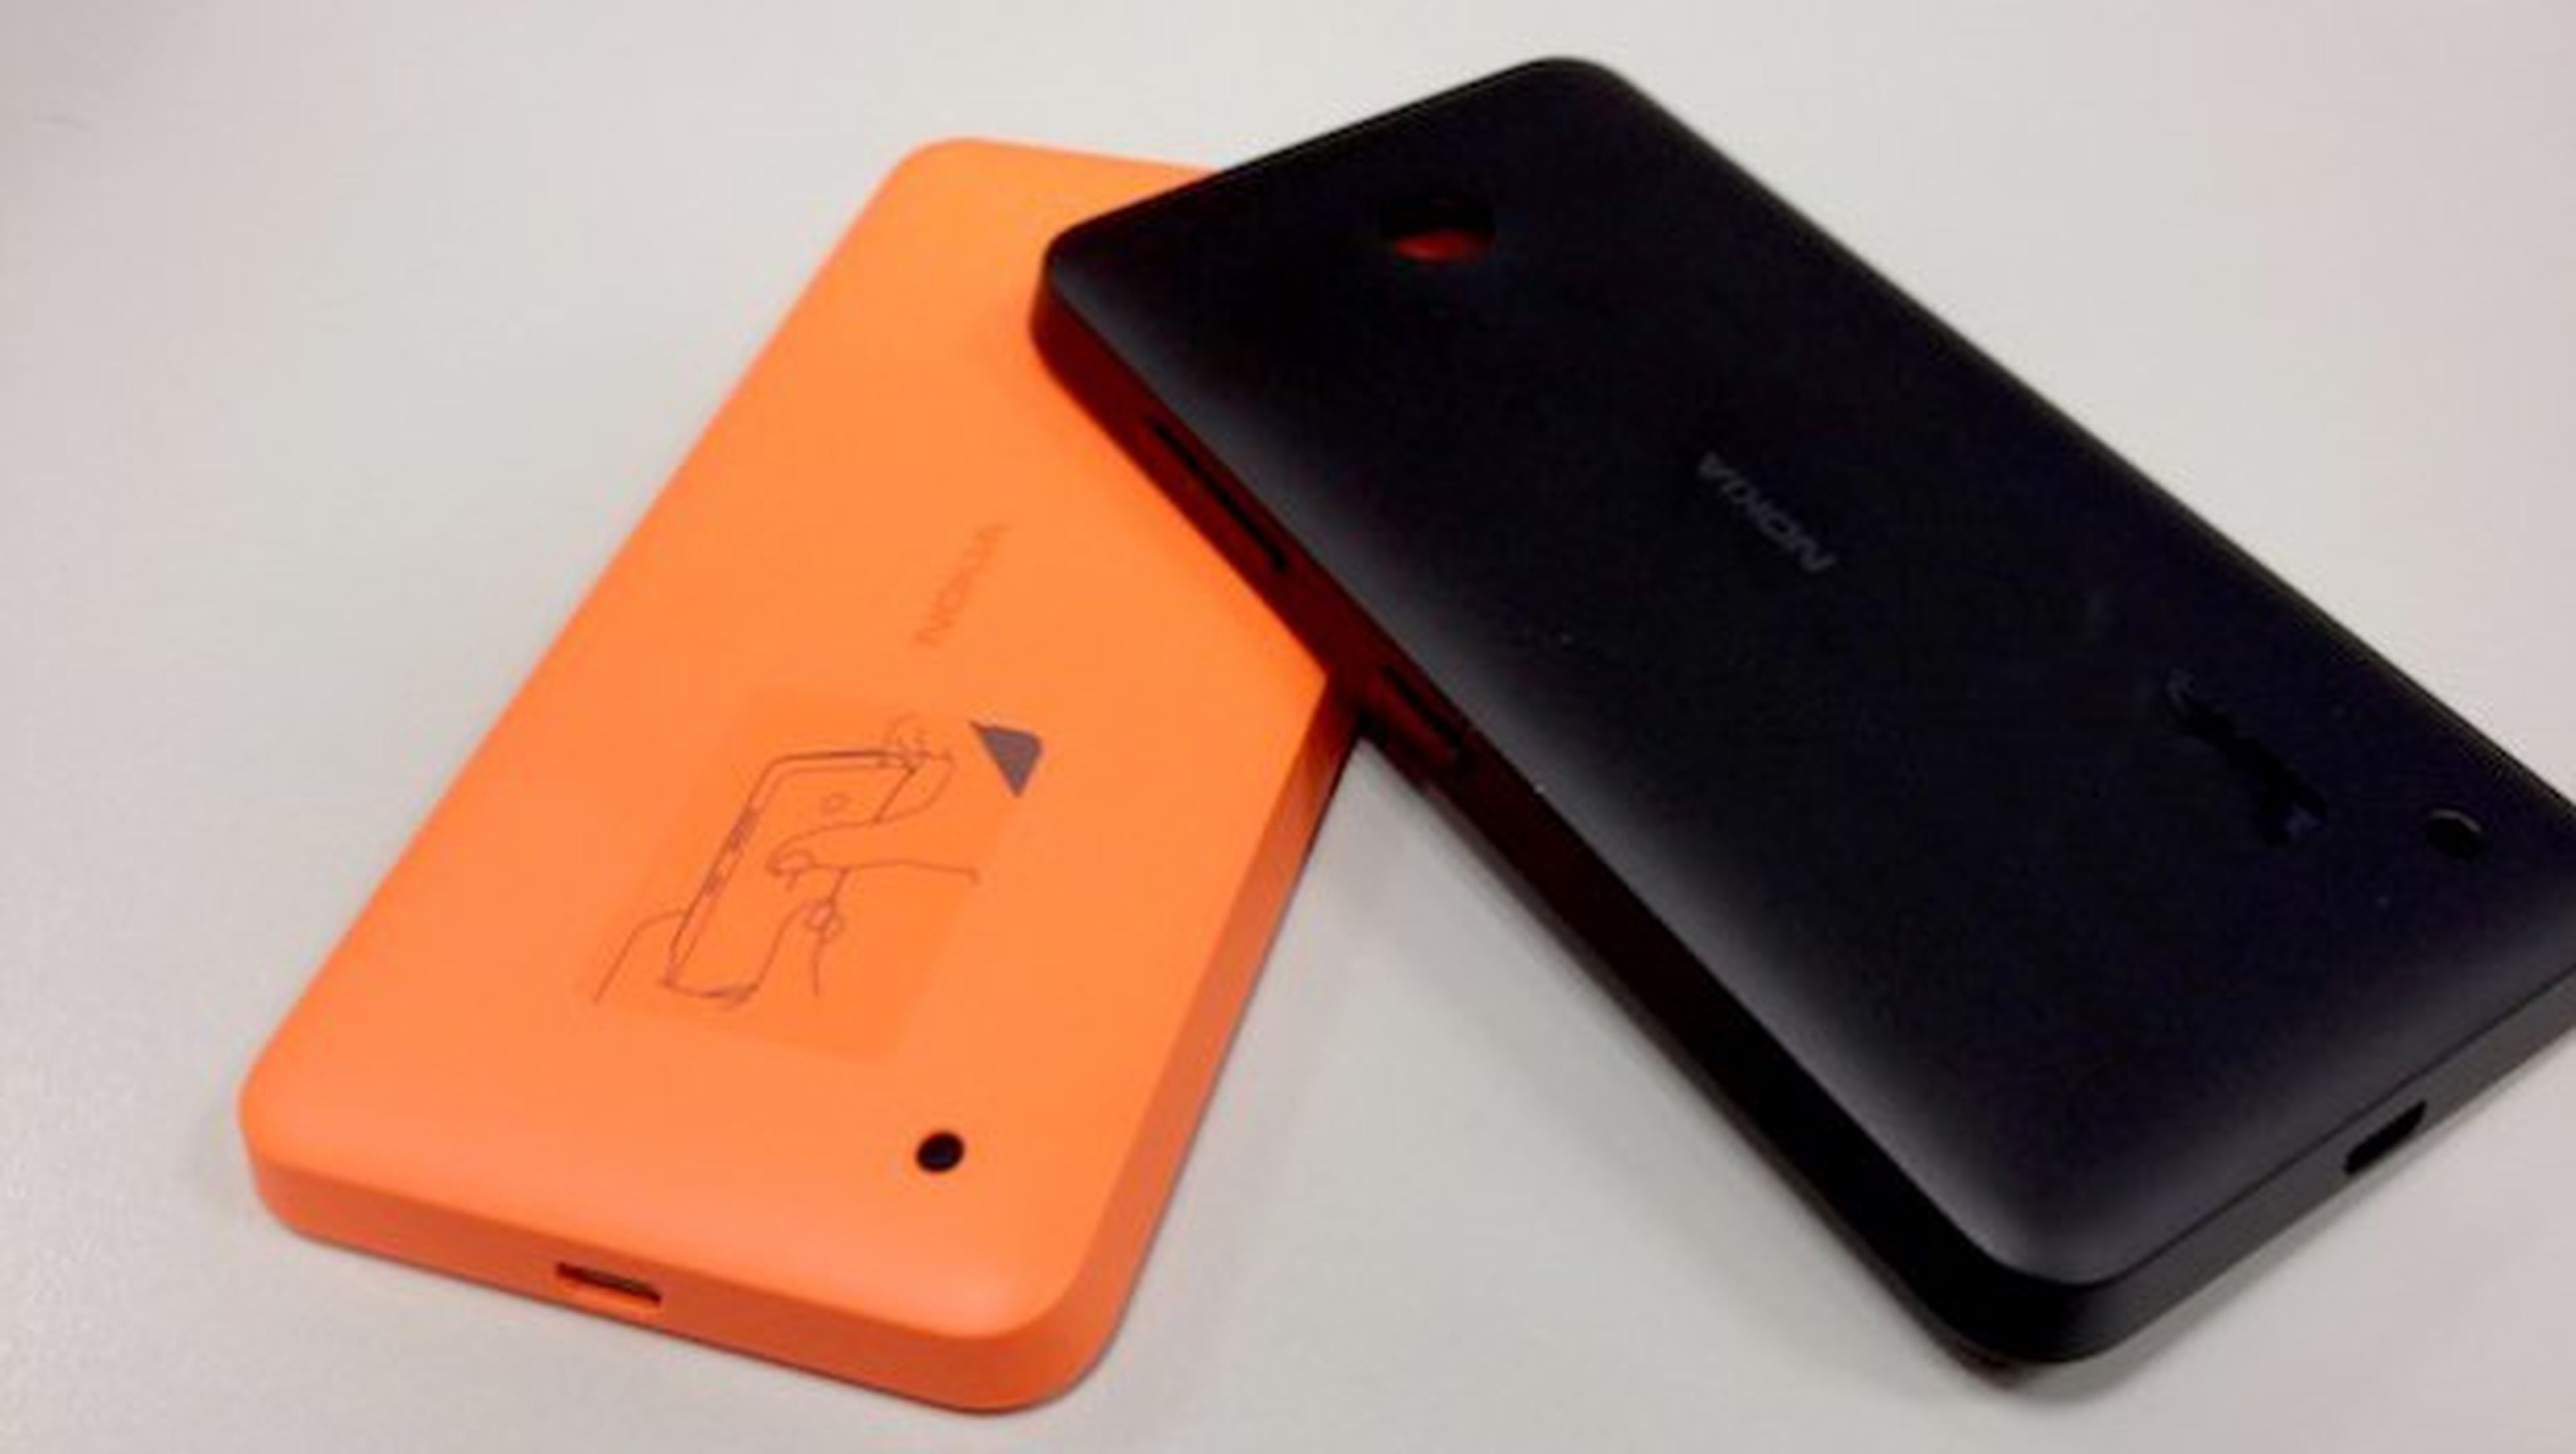 Nokia Lumia 630: análisis del low-cost con Windows Phone 8.1